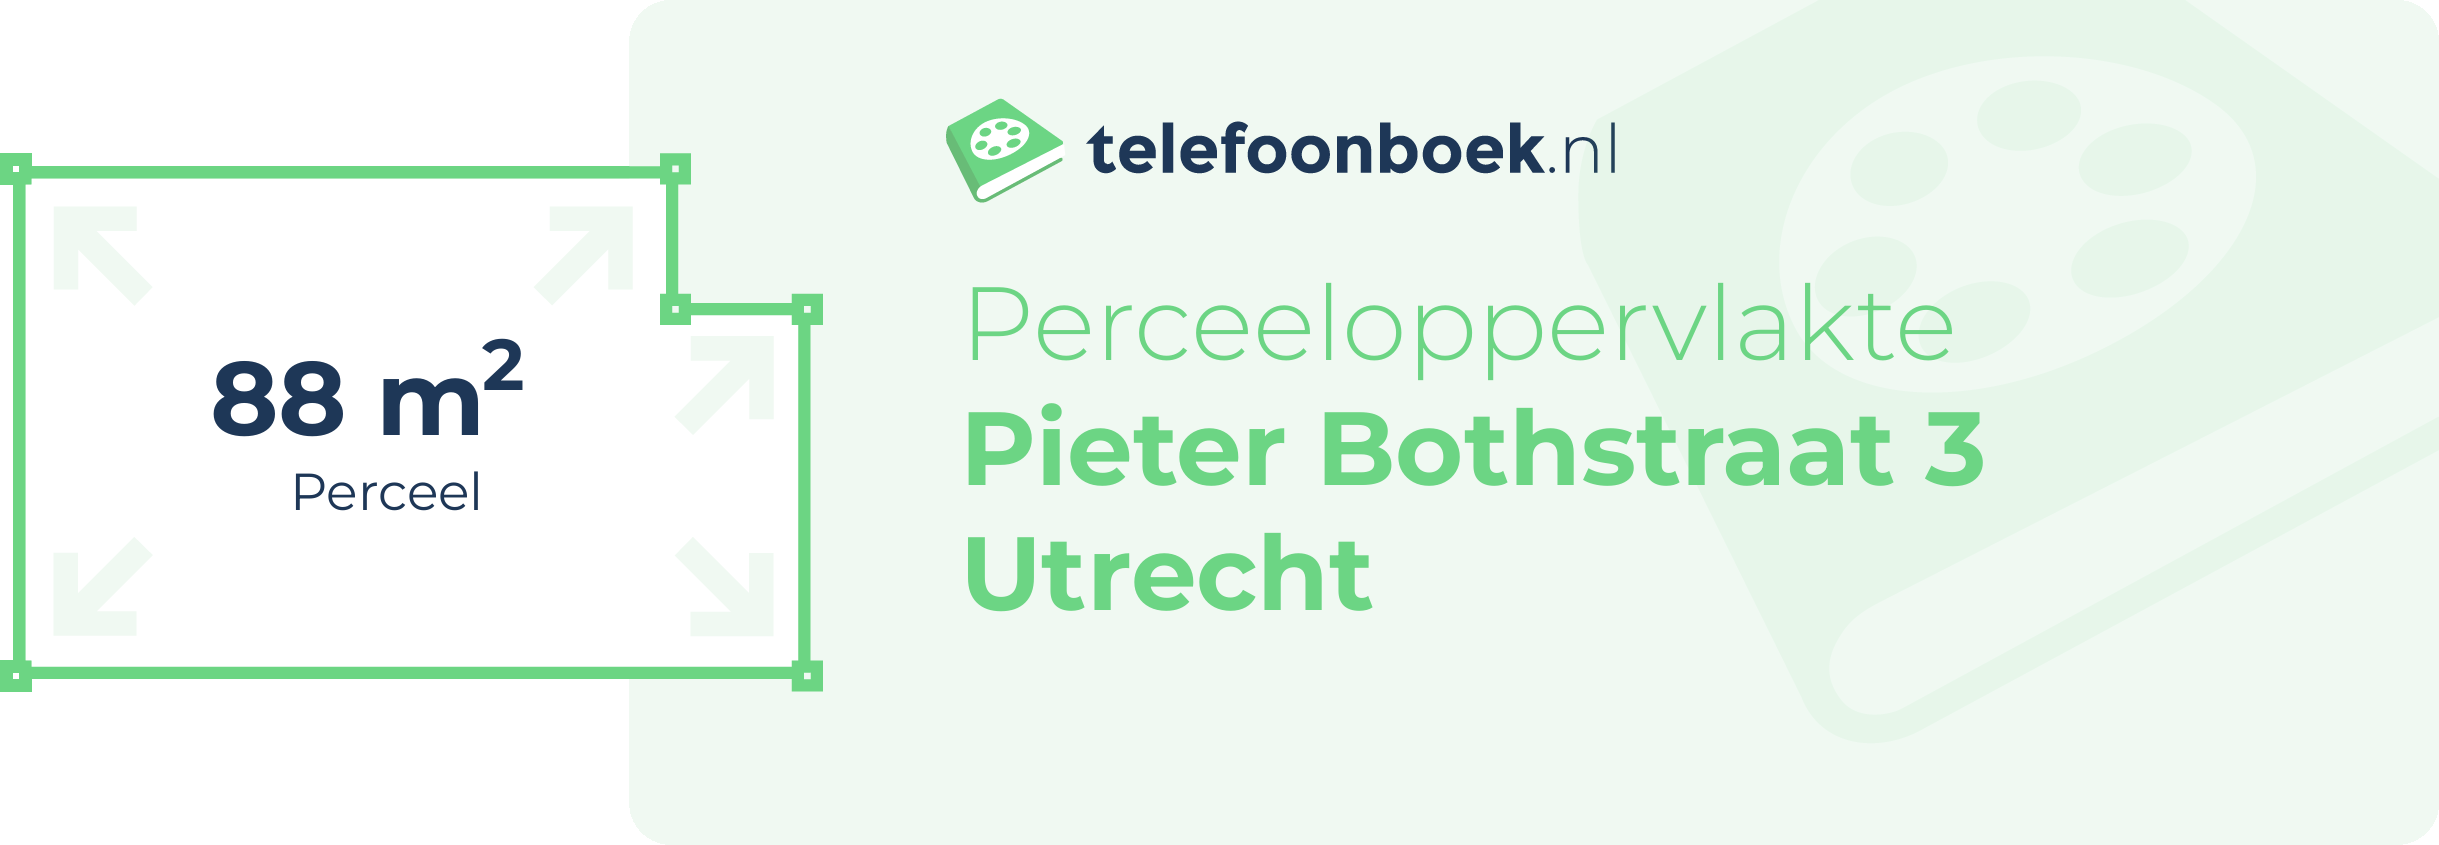 Perceeloppervlakte Pieter Bothstraat 3 Utrecht